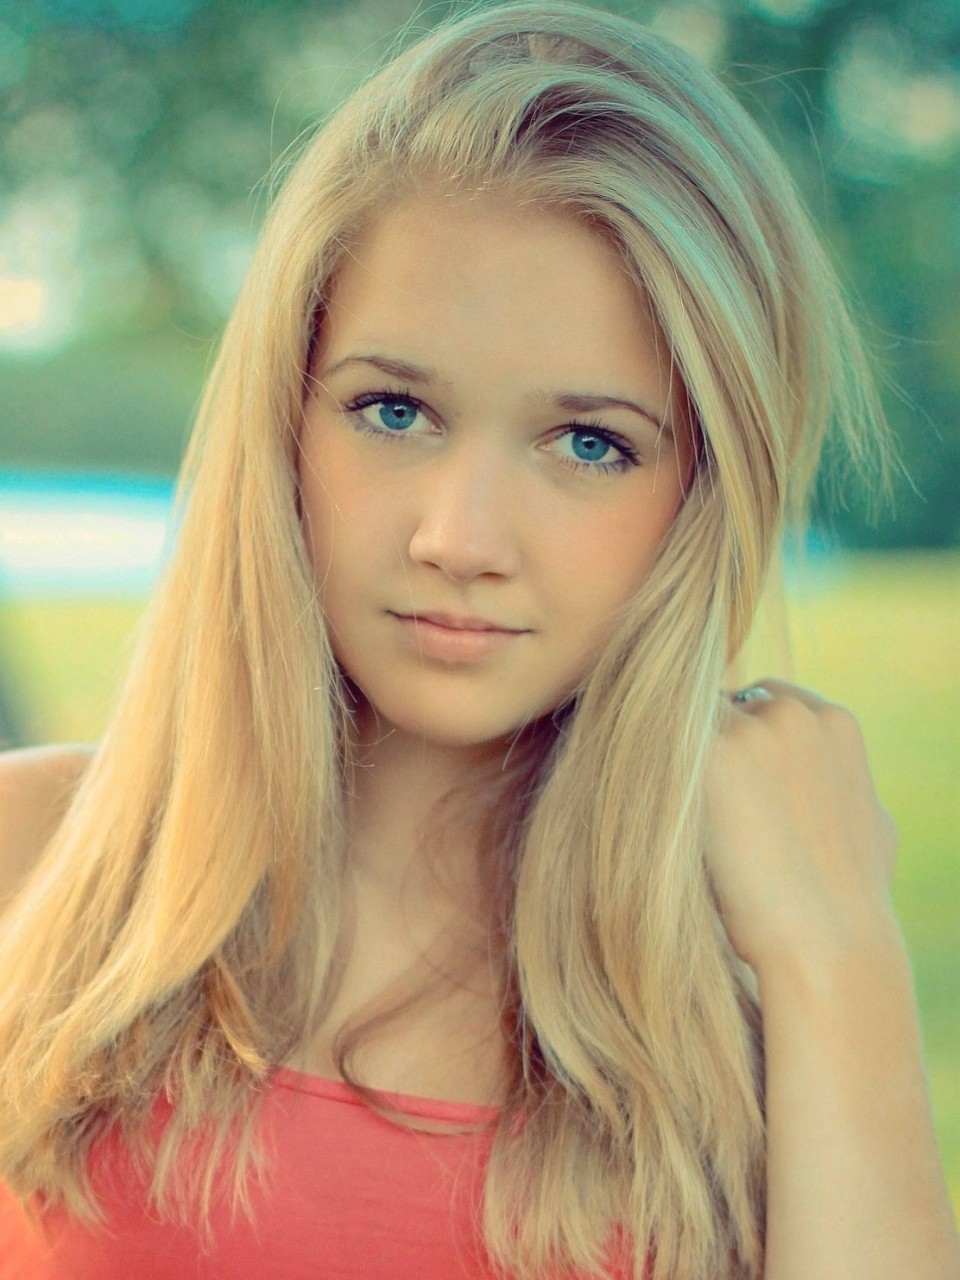 Jb jailbait. Катя Марченко Москва. Красивые блондинки 13 лет. Девочка подросток блондинка. Девушка блондинка подросток.